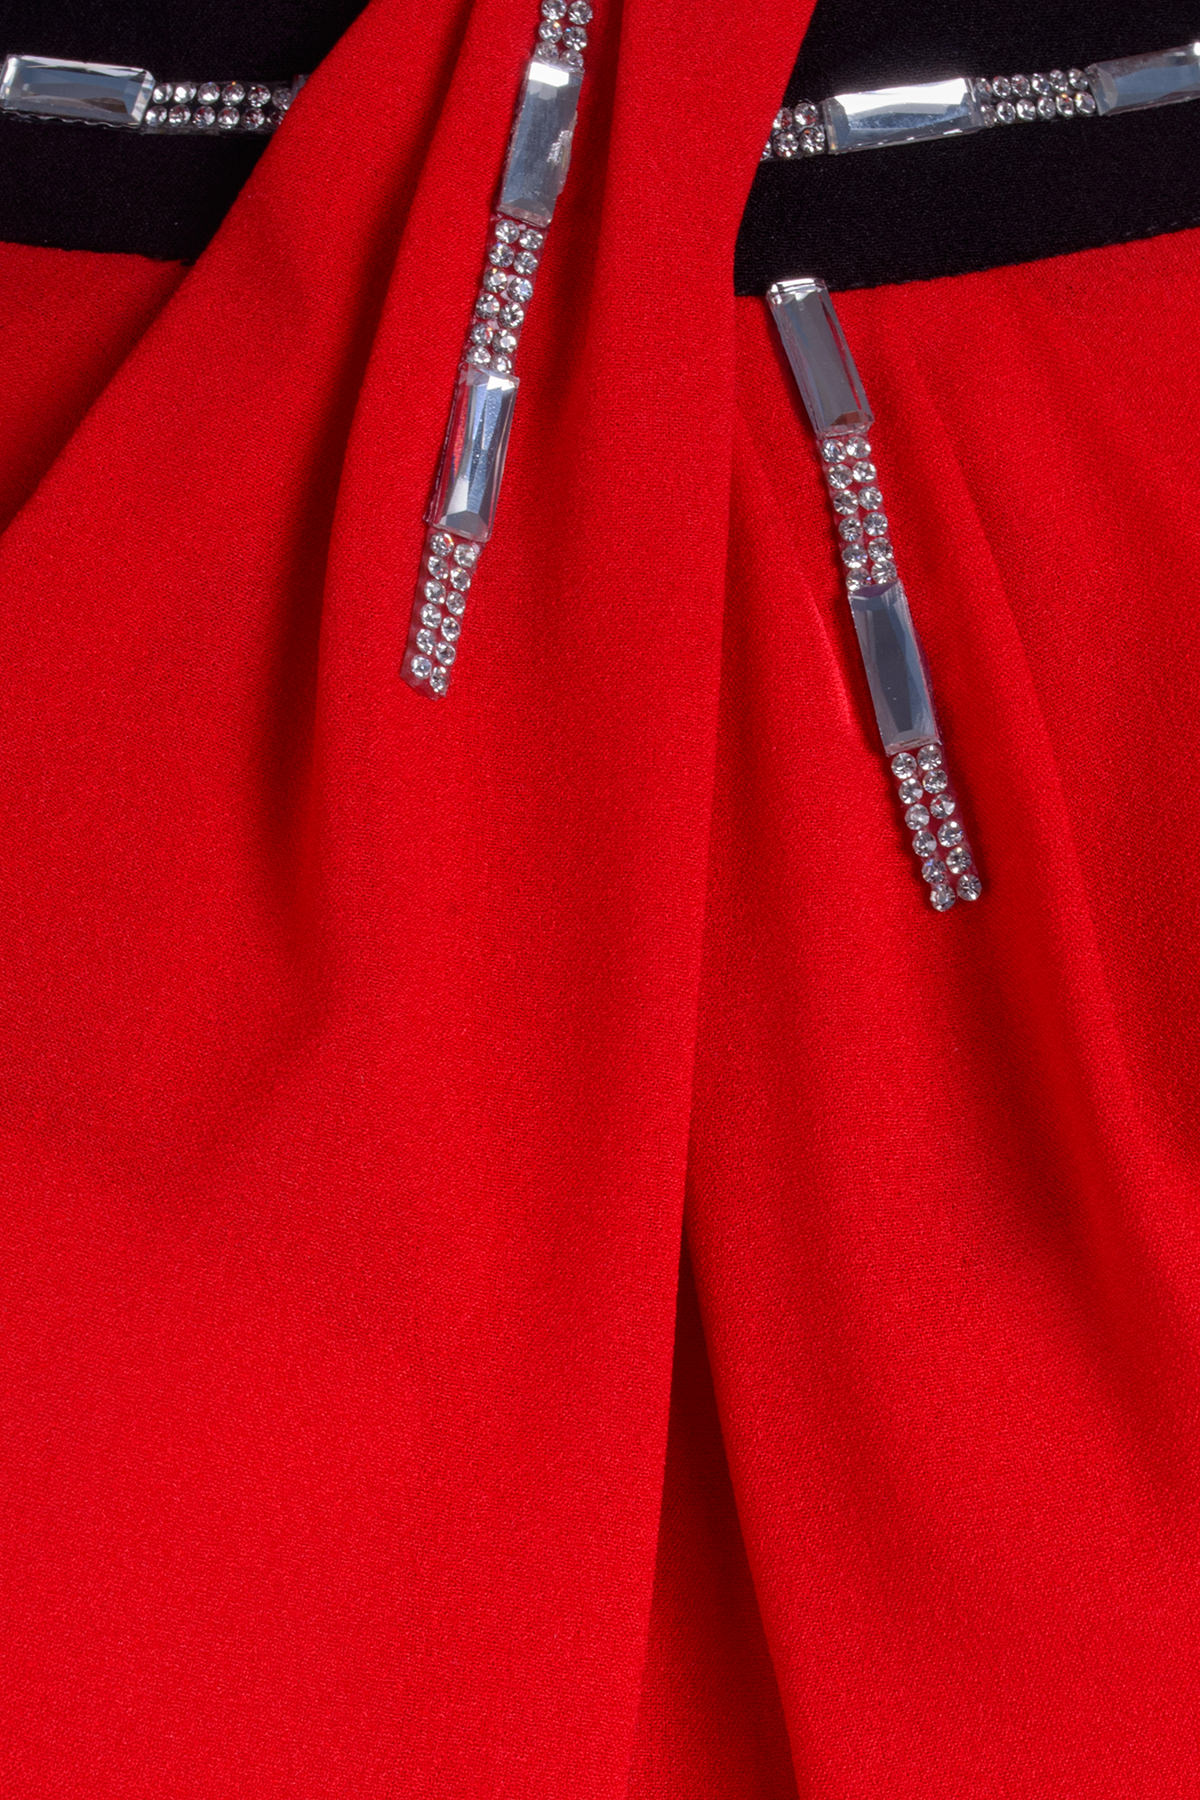 Платье Бали креп шифон АРТ. 6273 Цвет: Красный / черный - фото 4, интернет магазин tm-modus.ru